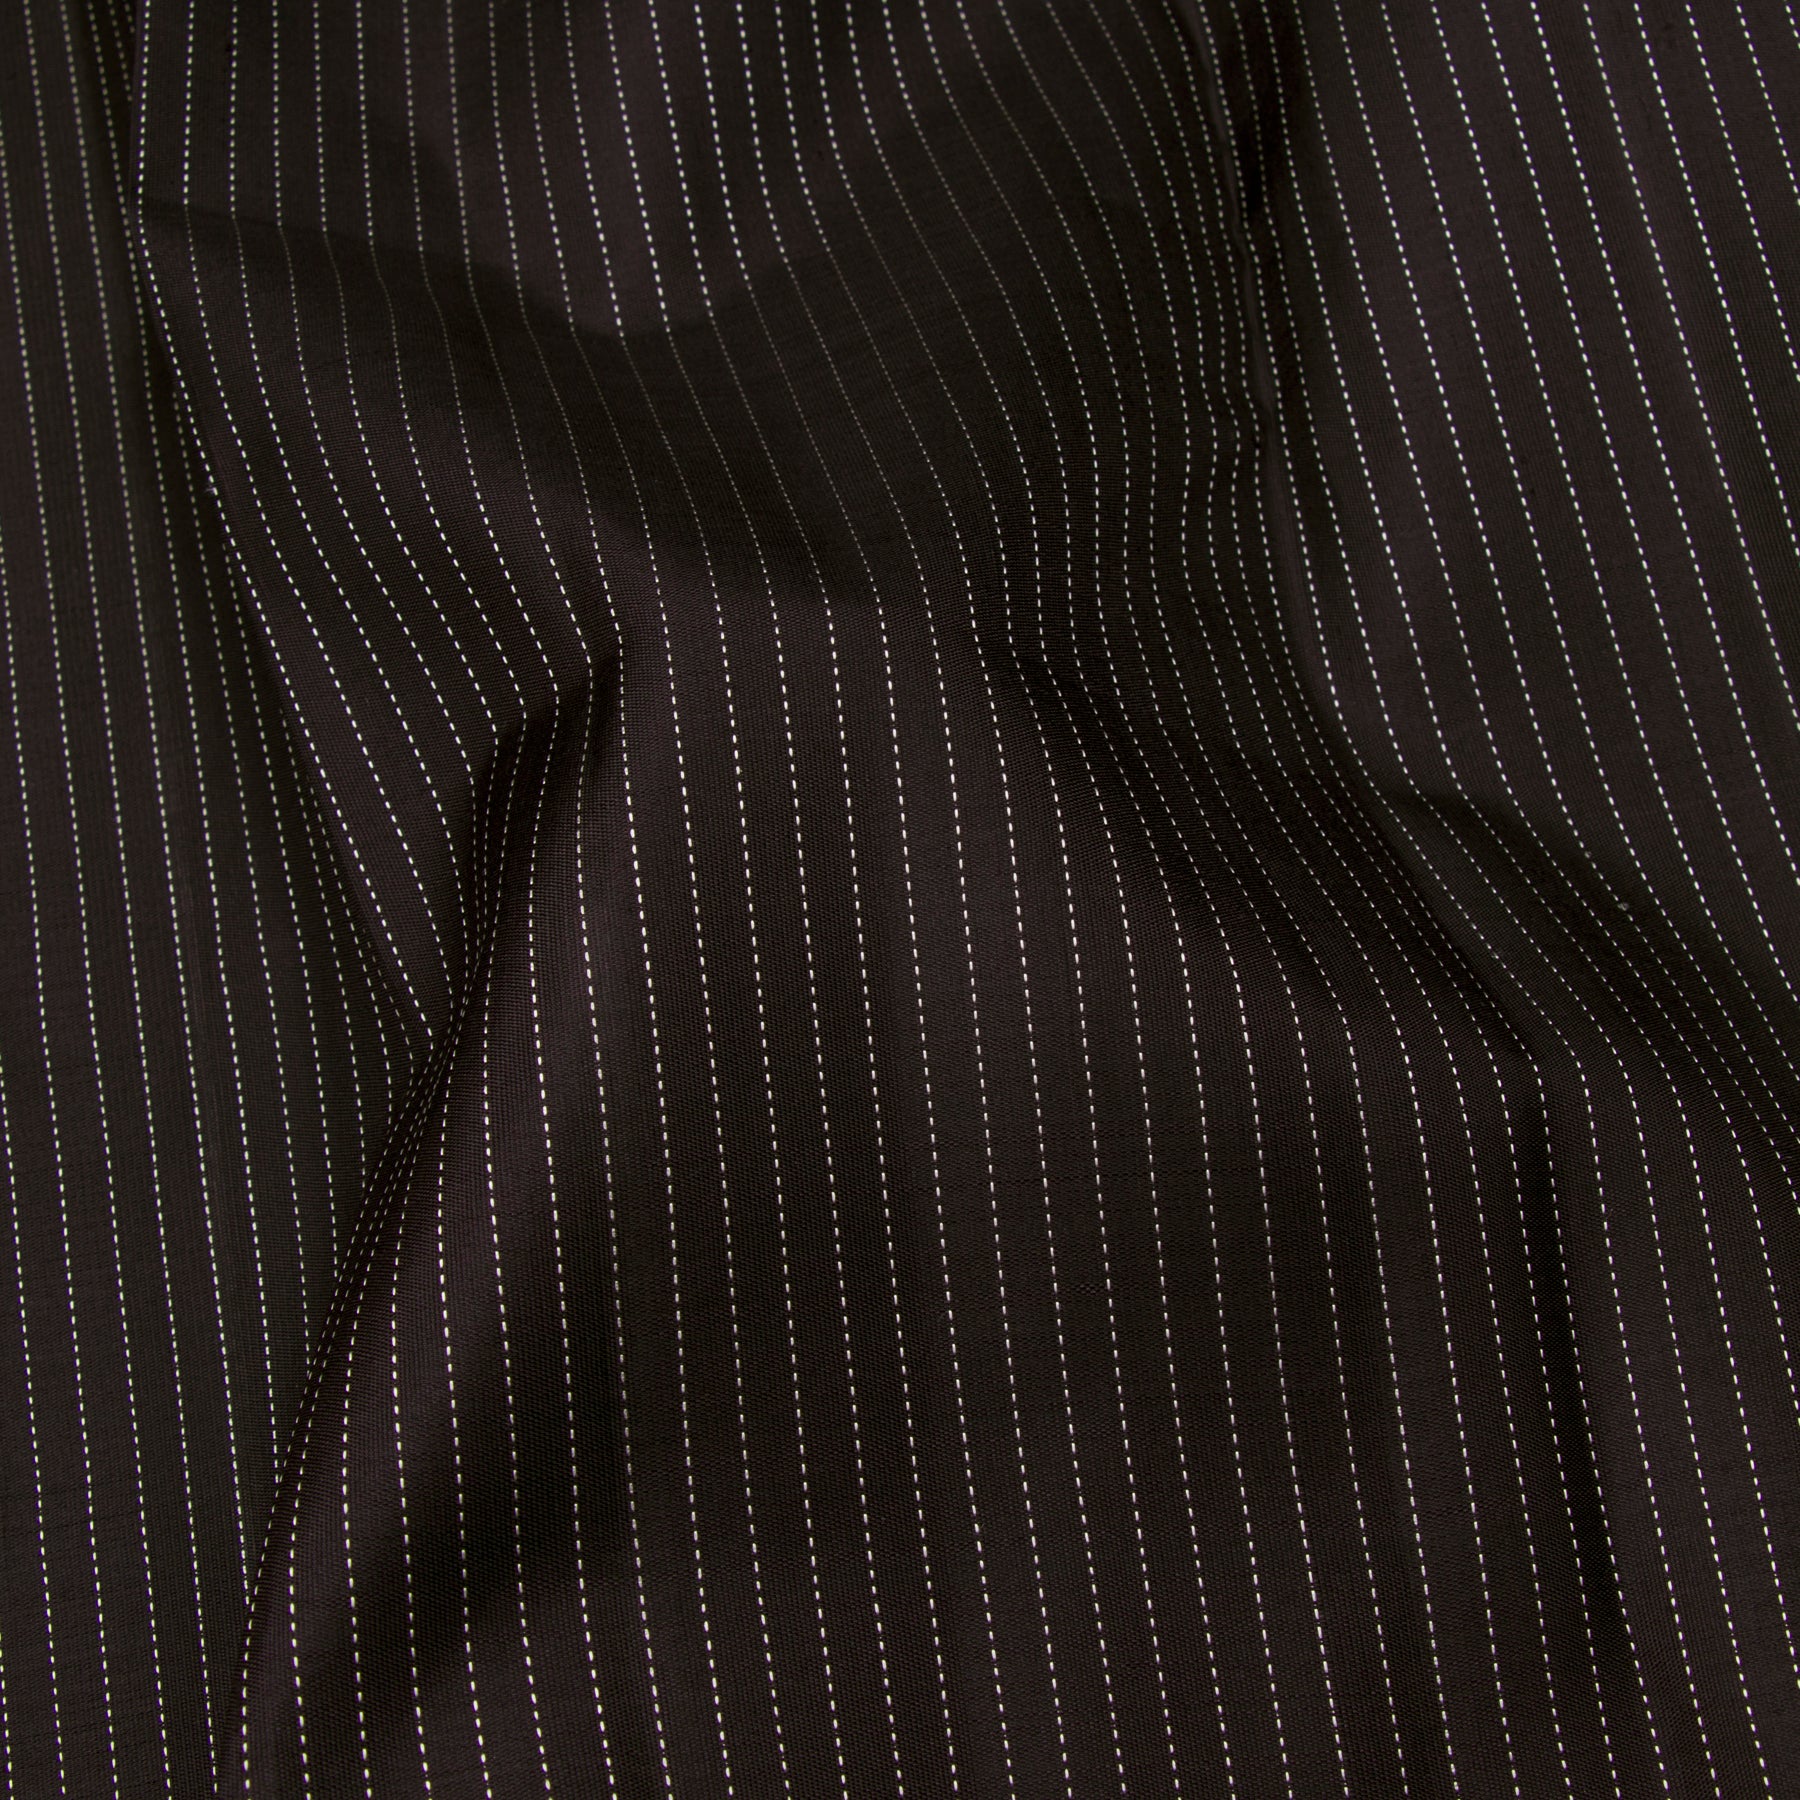 Kanakavalli Kanjivaram Silk Sari 23-599-HS001-13850 - Fabric View